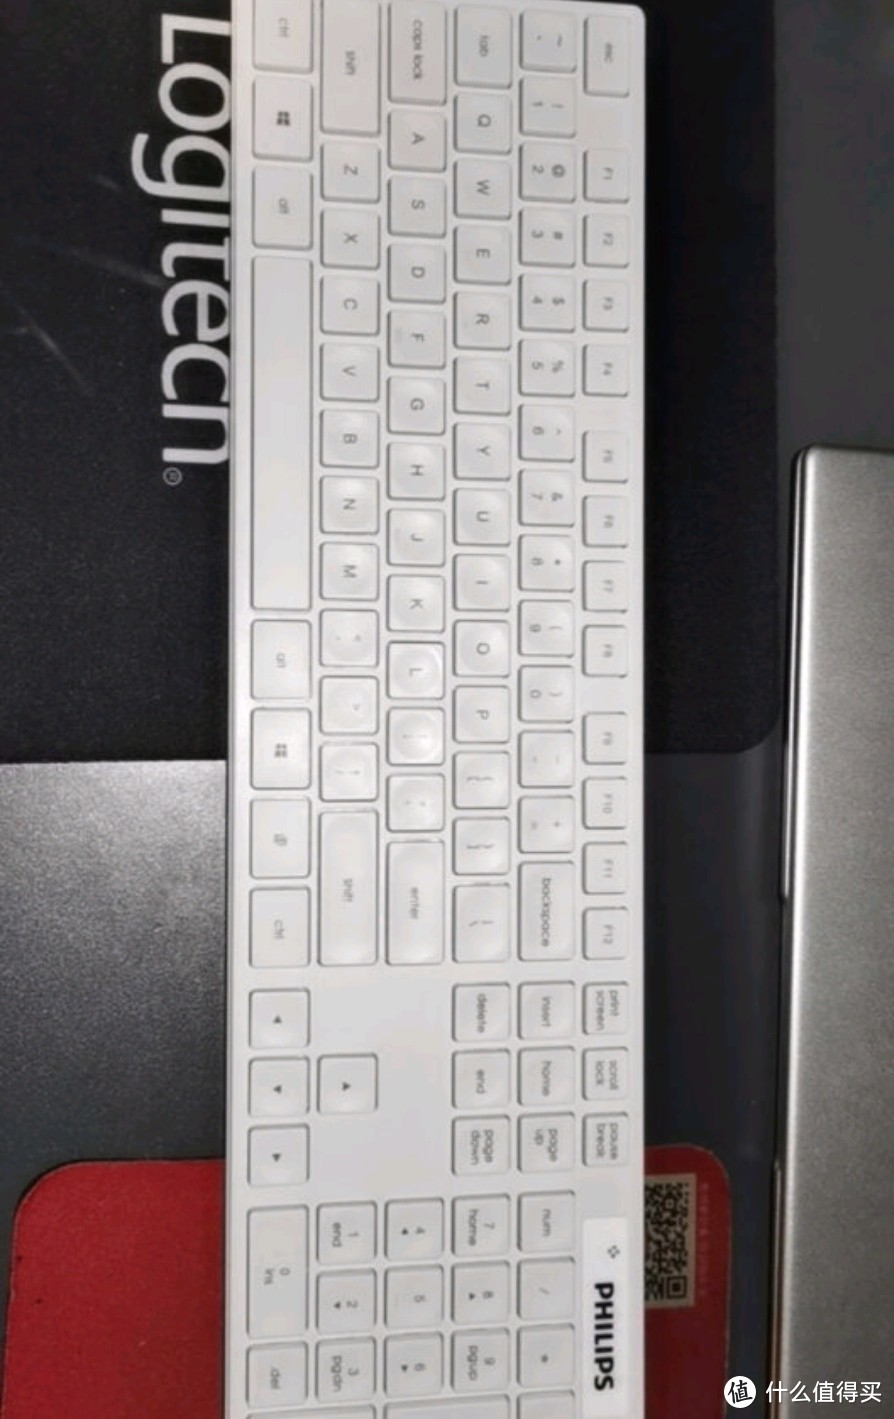 清新高雅的键盘鼠标套装